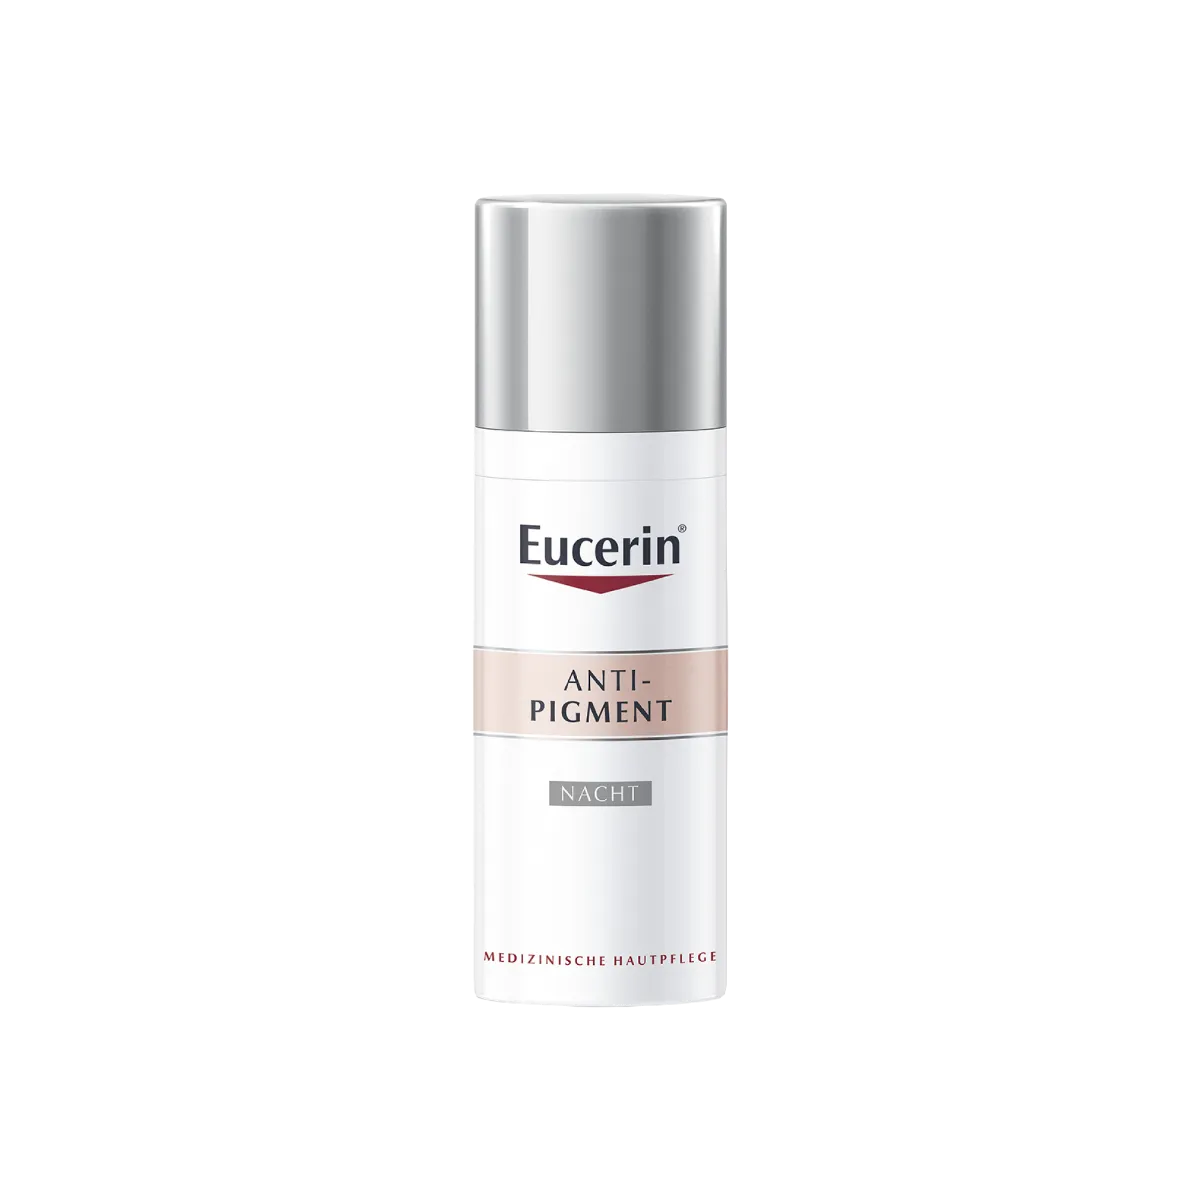 Eucerin Anti-Pigment antypigmentacyjny krem do twarzy na noc, 50 ml 